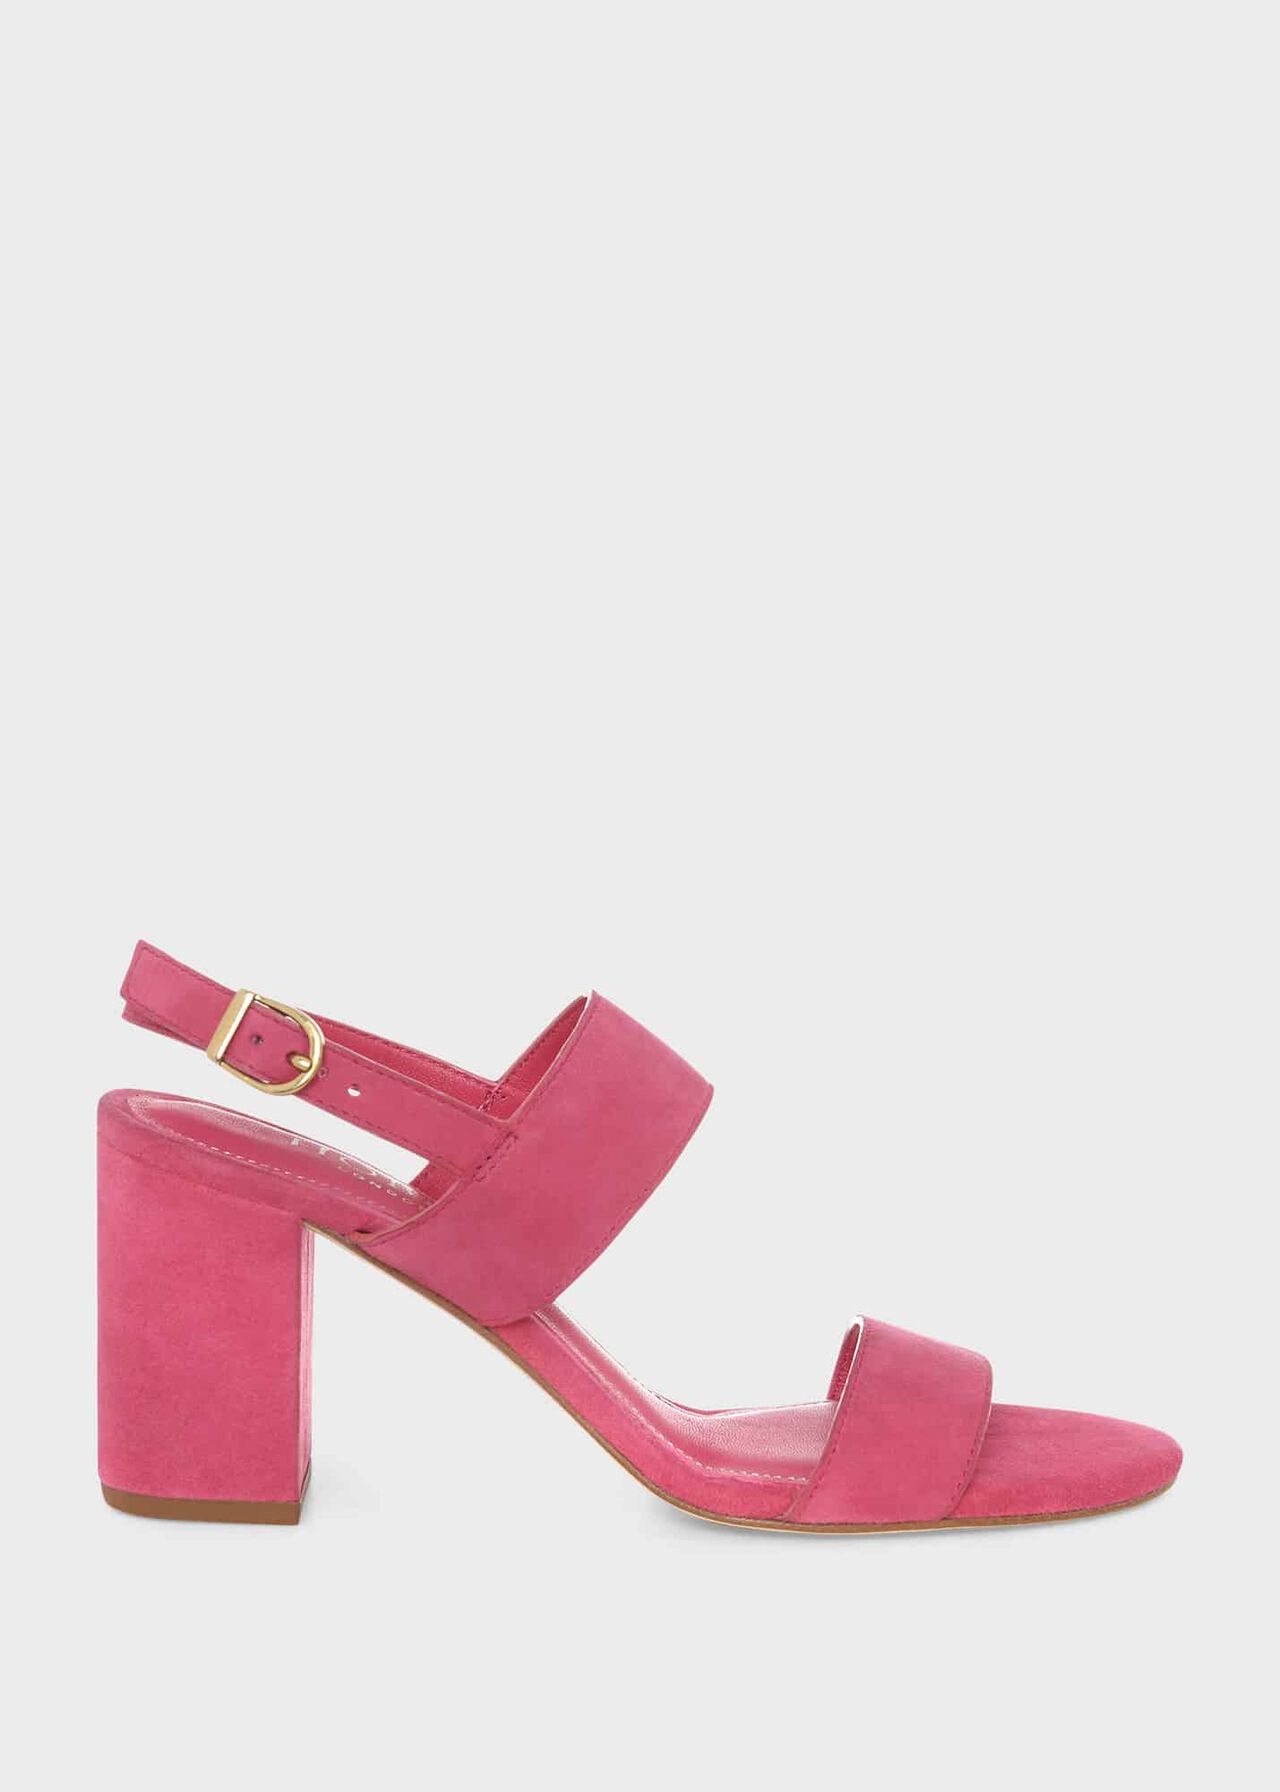 Blake Heeled Sandal, Bright Pink, hi-res